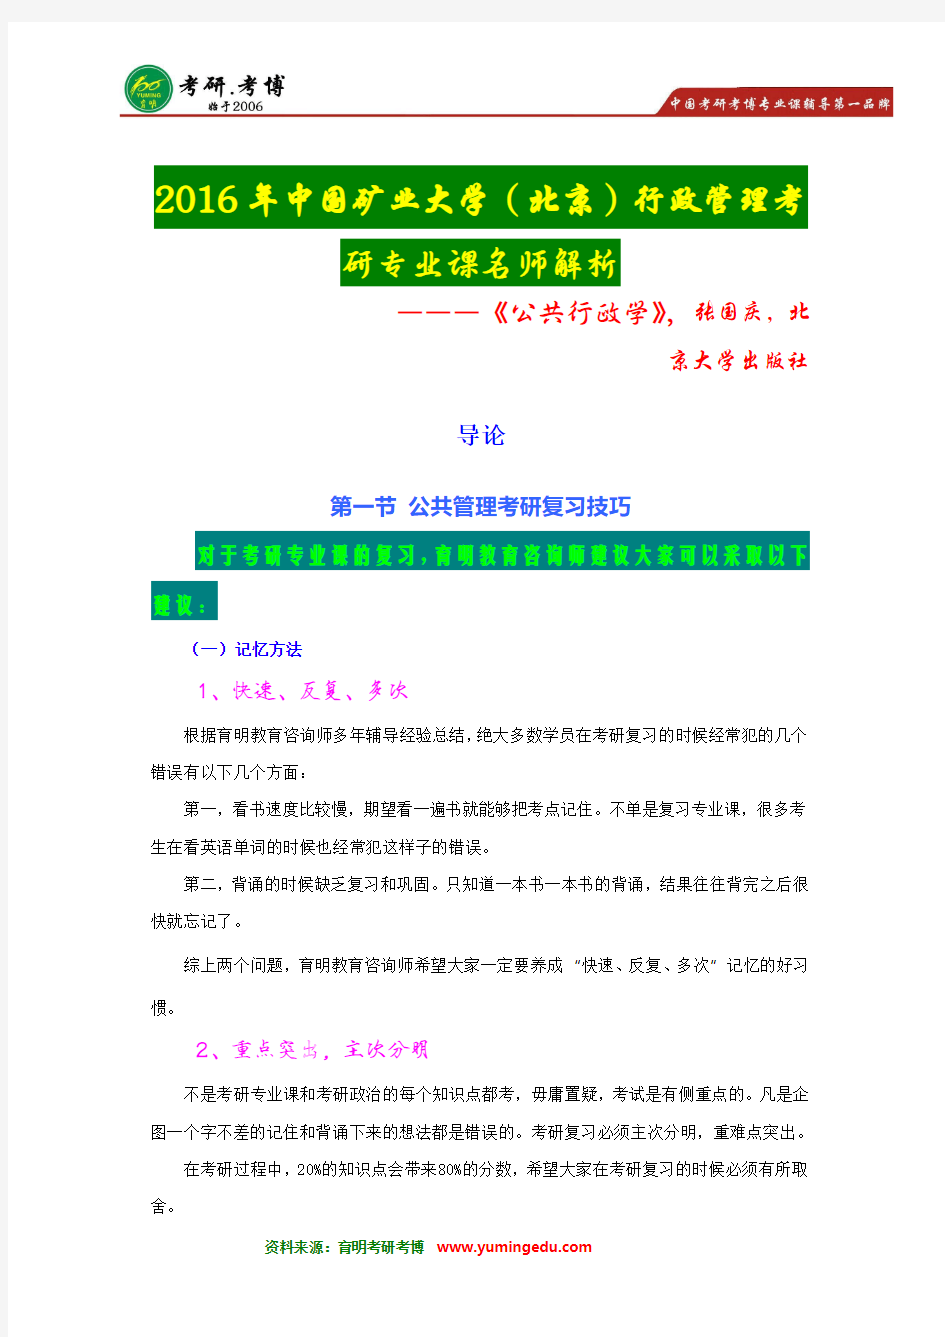 【状元王策笔记】2016年中国矿业大学(北京)行政管理考研状元经验分享--报录比-